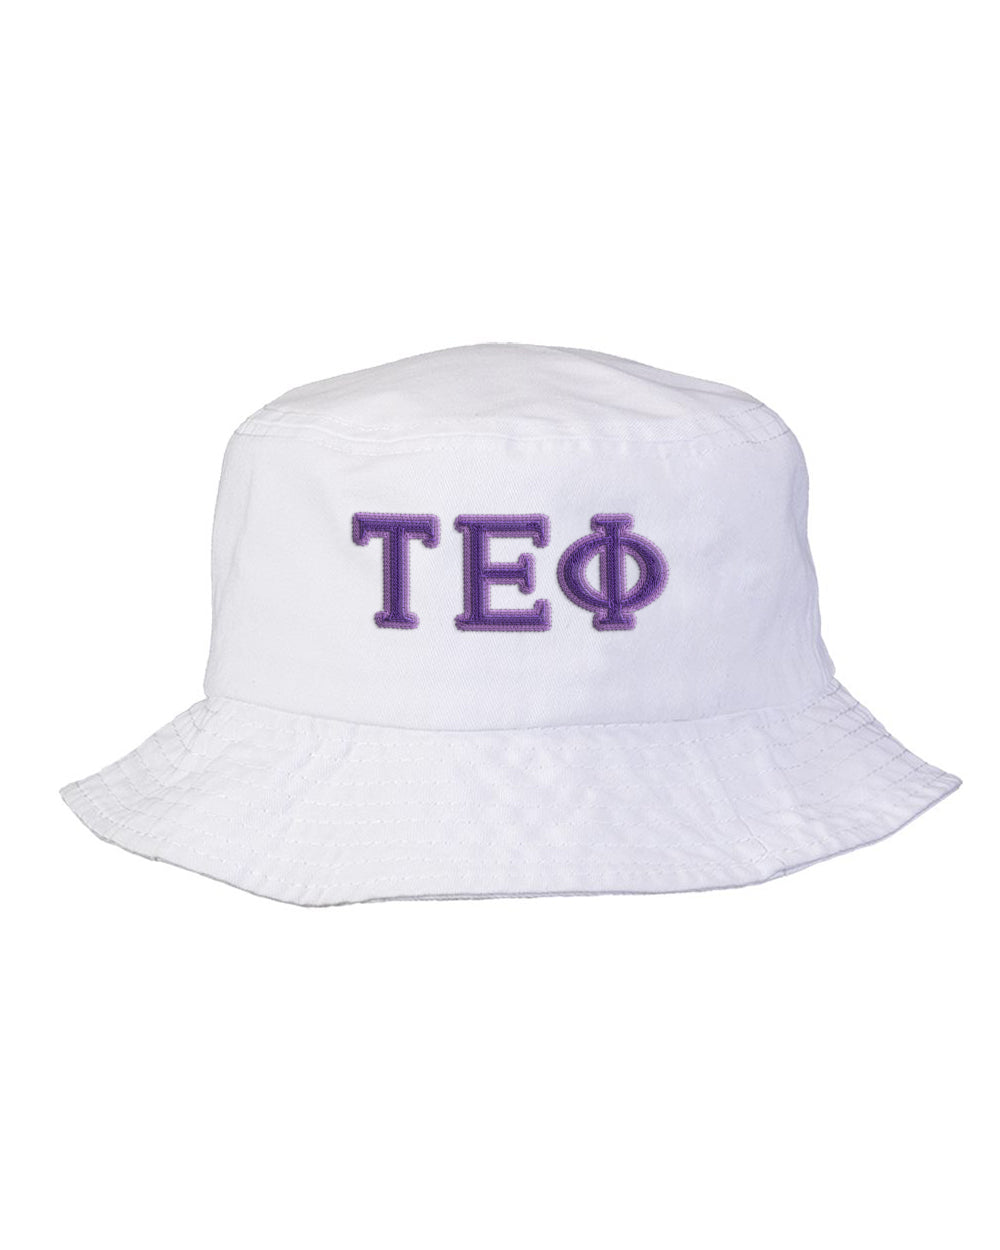 Tau Epsilon Phi Embroidered Bucket Hat